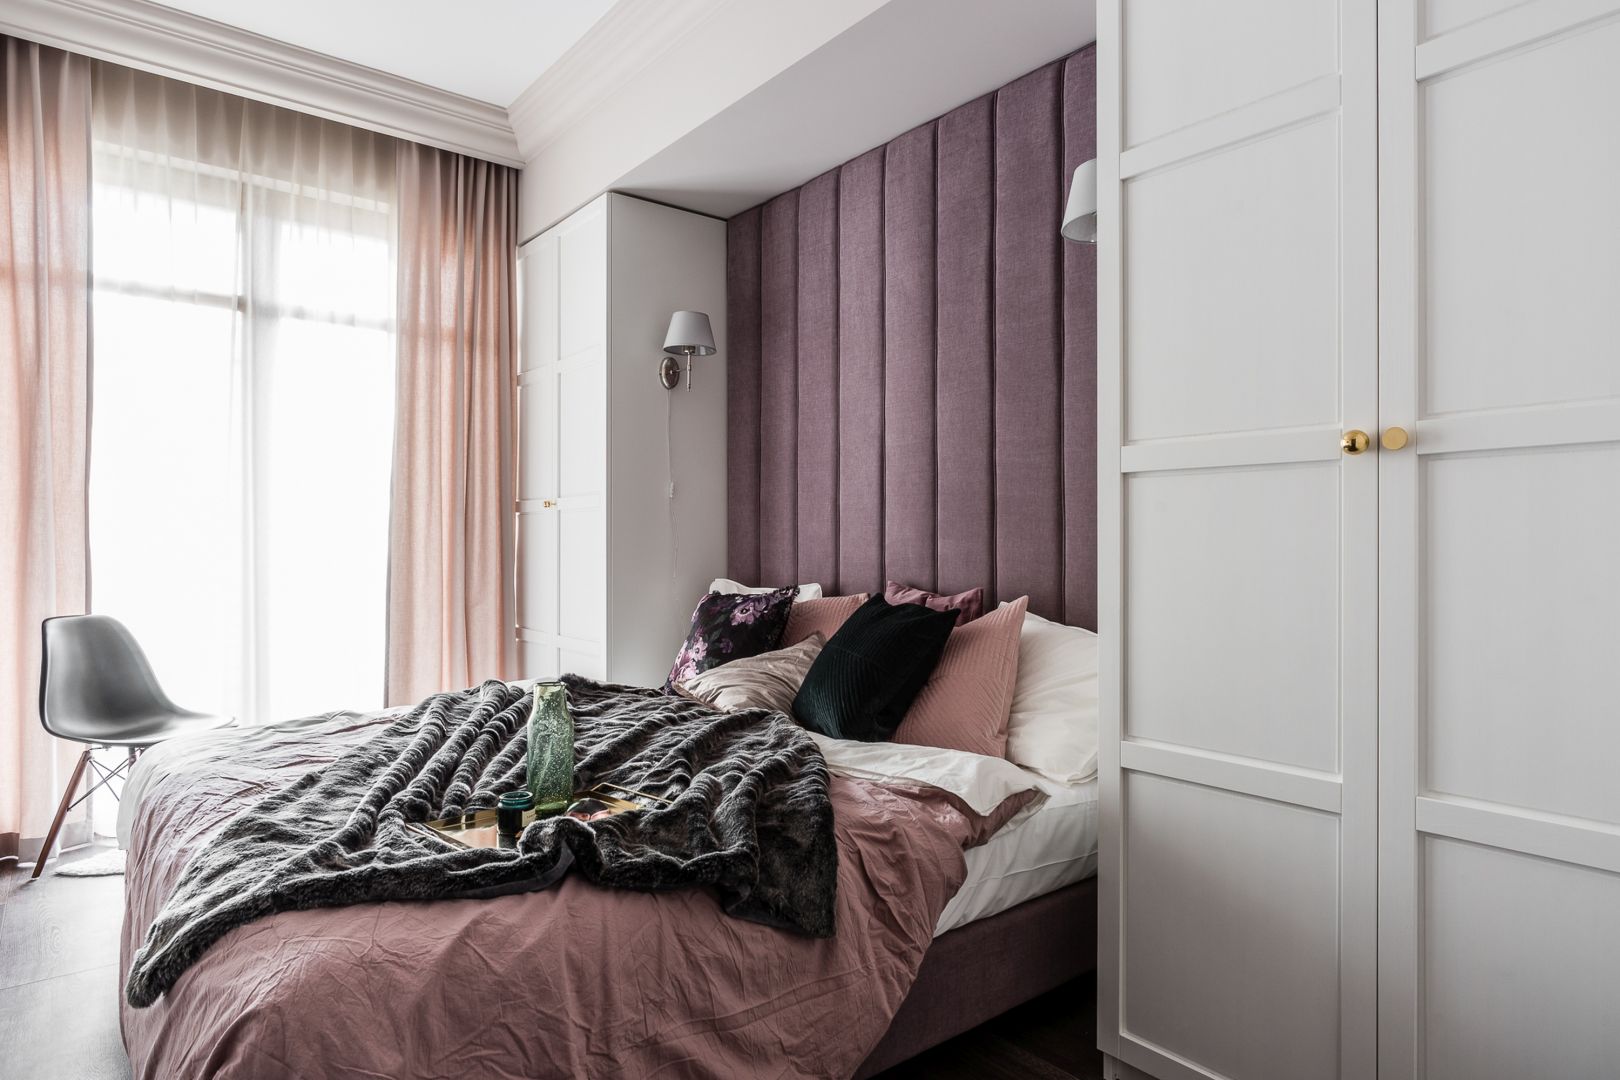 Tapicerowany zagłówek - klasyczny czy nowoczesny? 10 pomysłów na łóżko do sypialni. Projekt JT Group